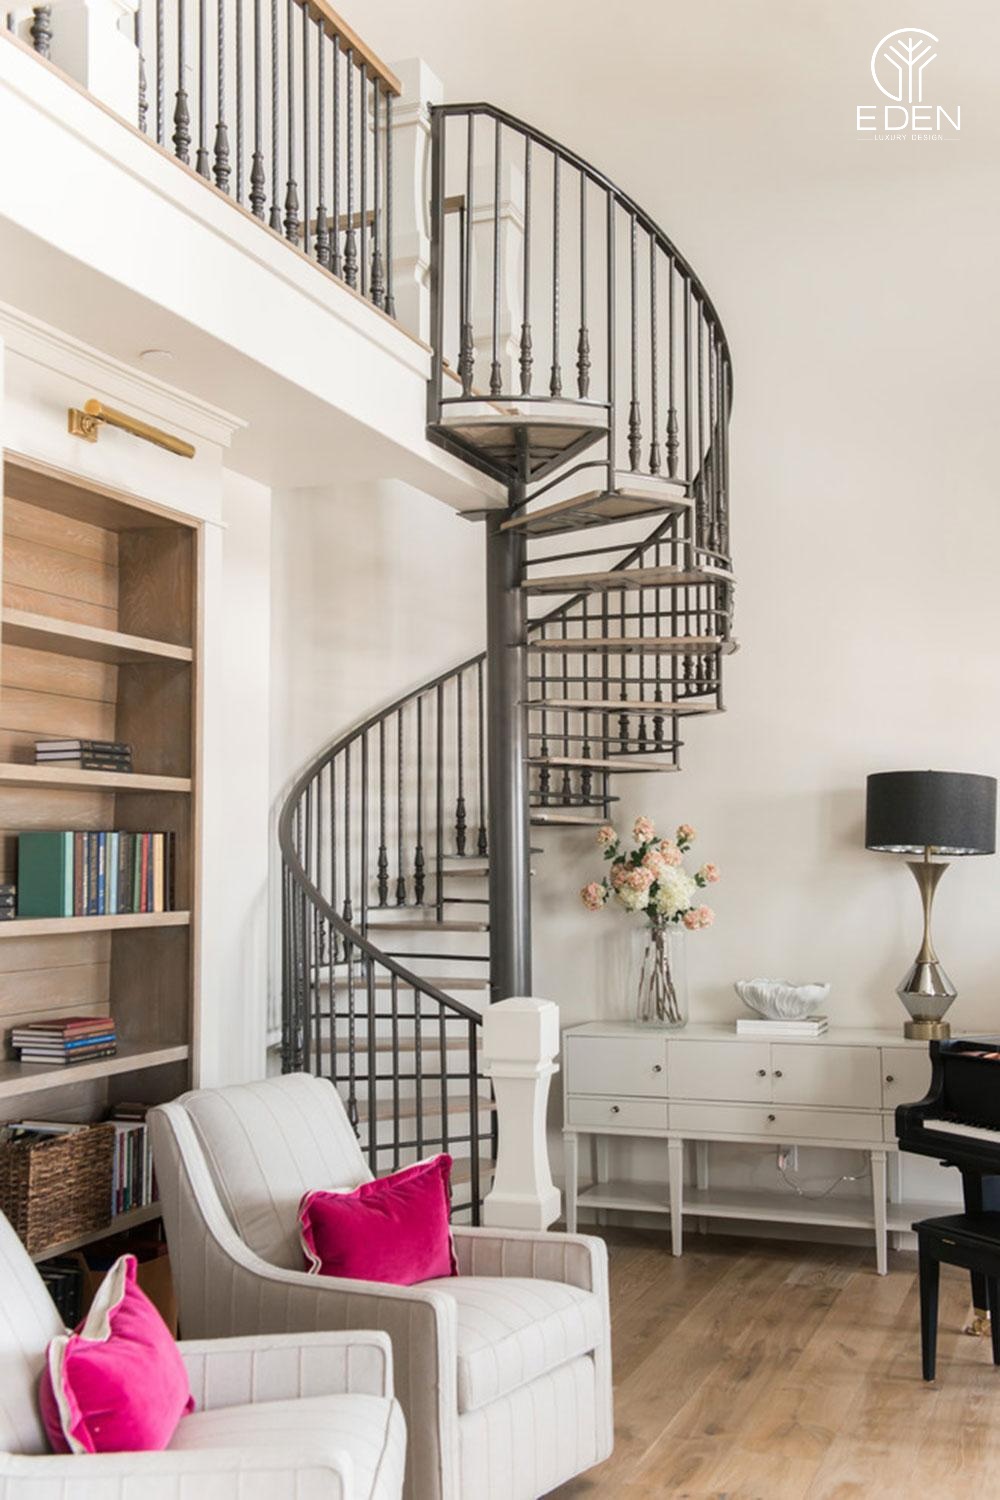 Bài trí vật dụng trang trí phòng khách sao cho hài hòa với chất liệu và màu sắc của cầu thang